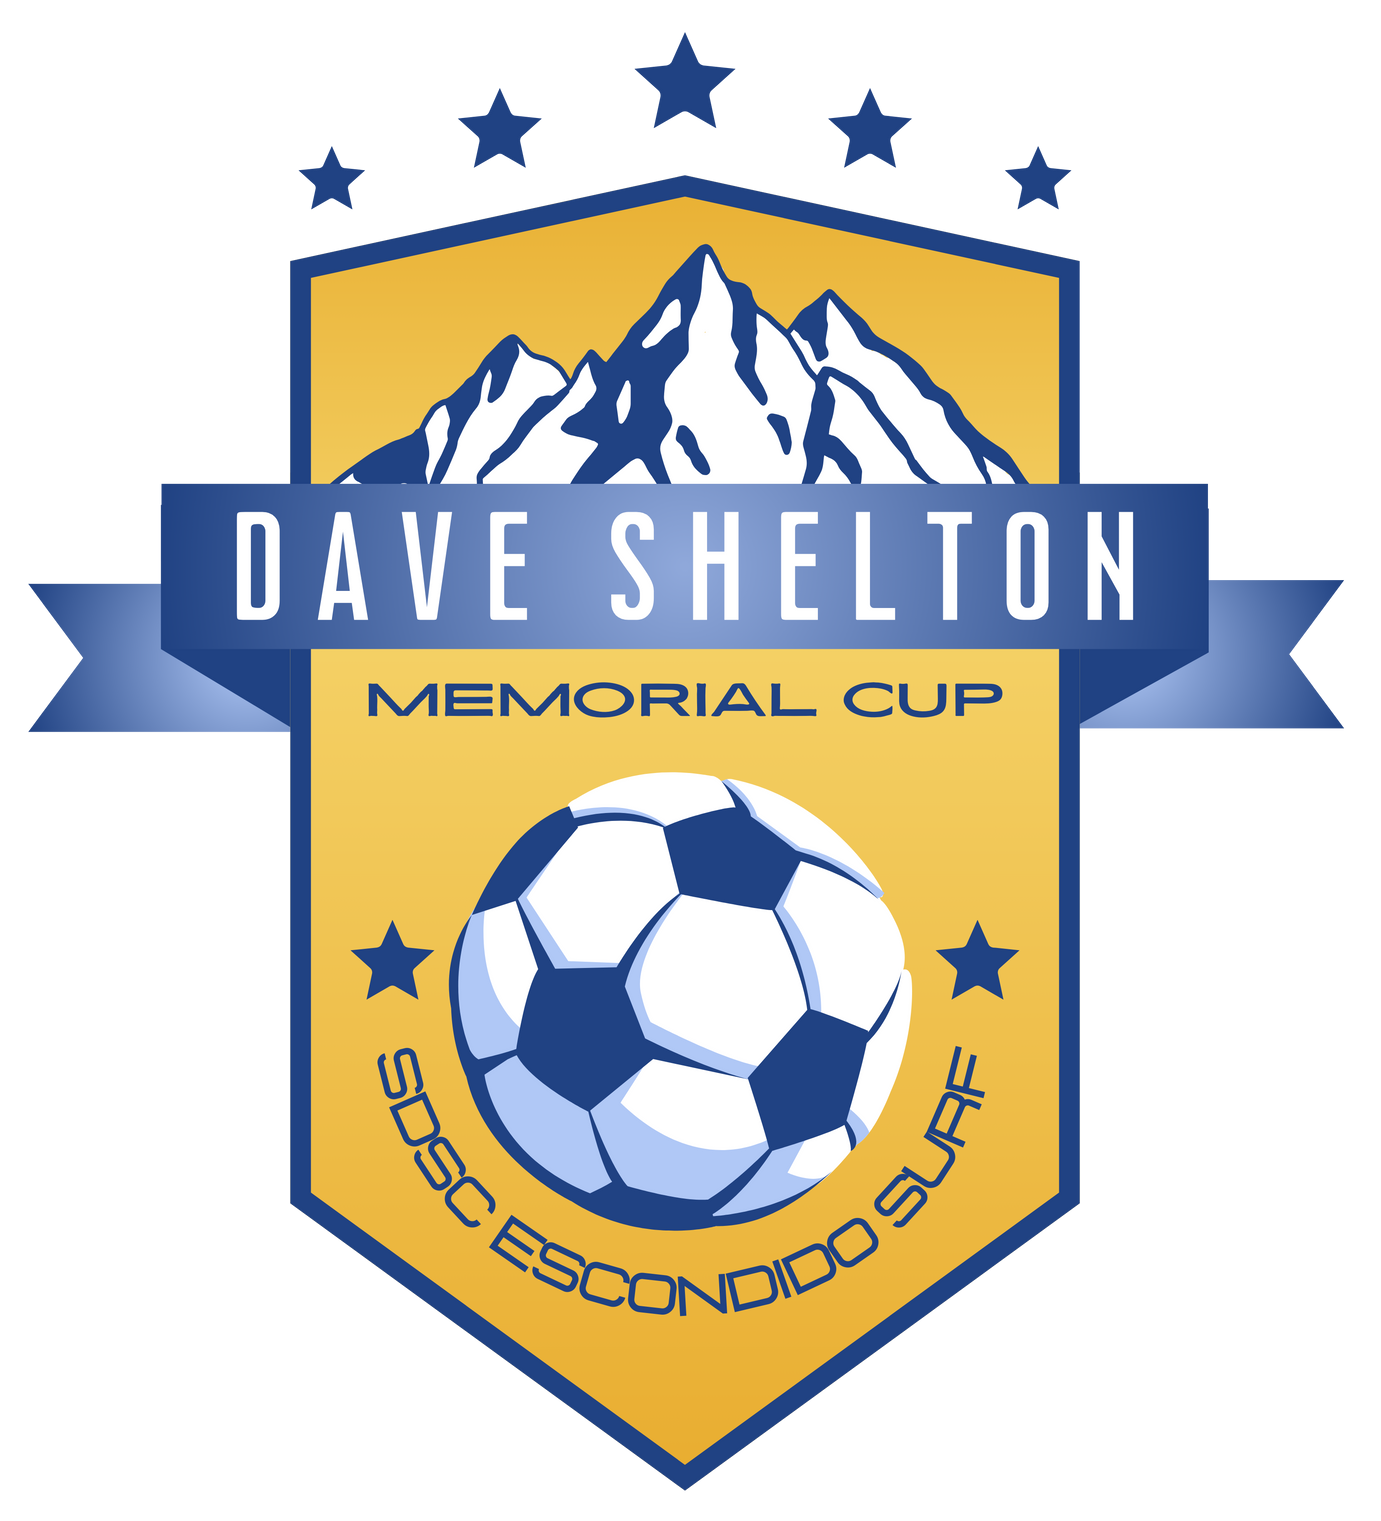 Dave Shelton Memorial Cup